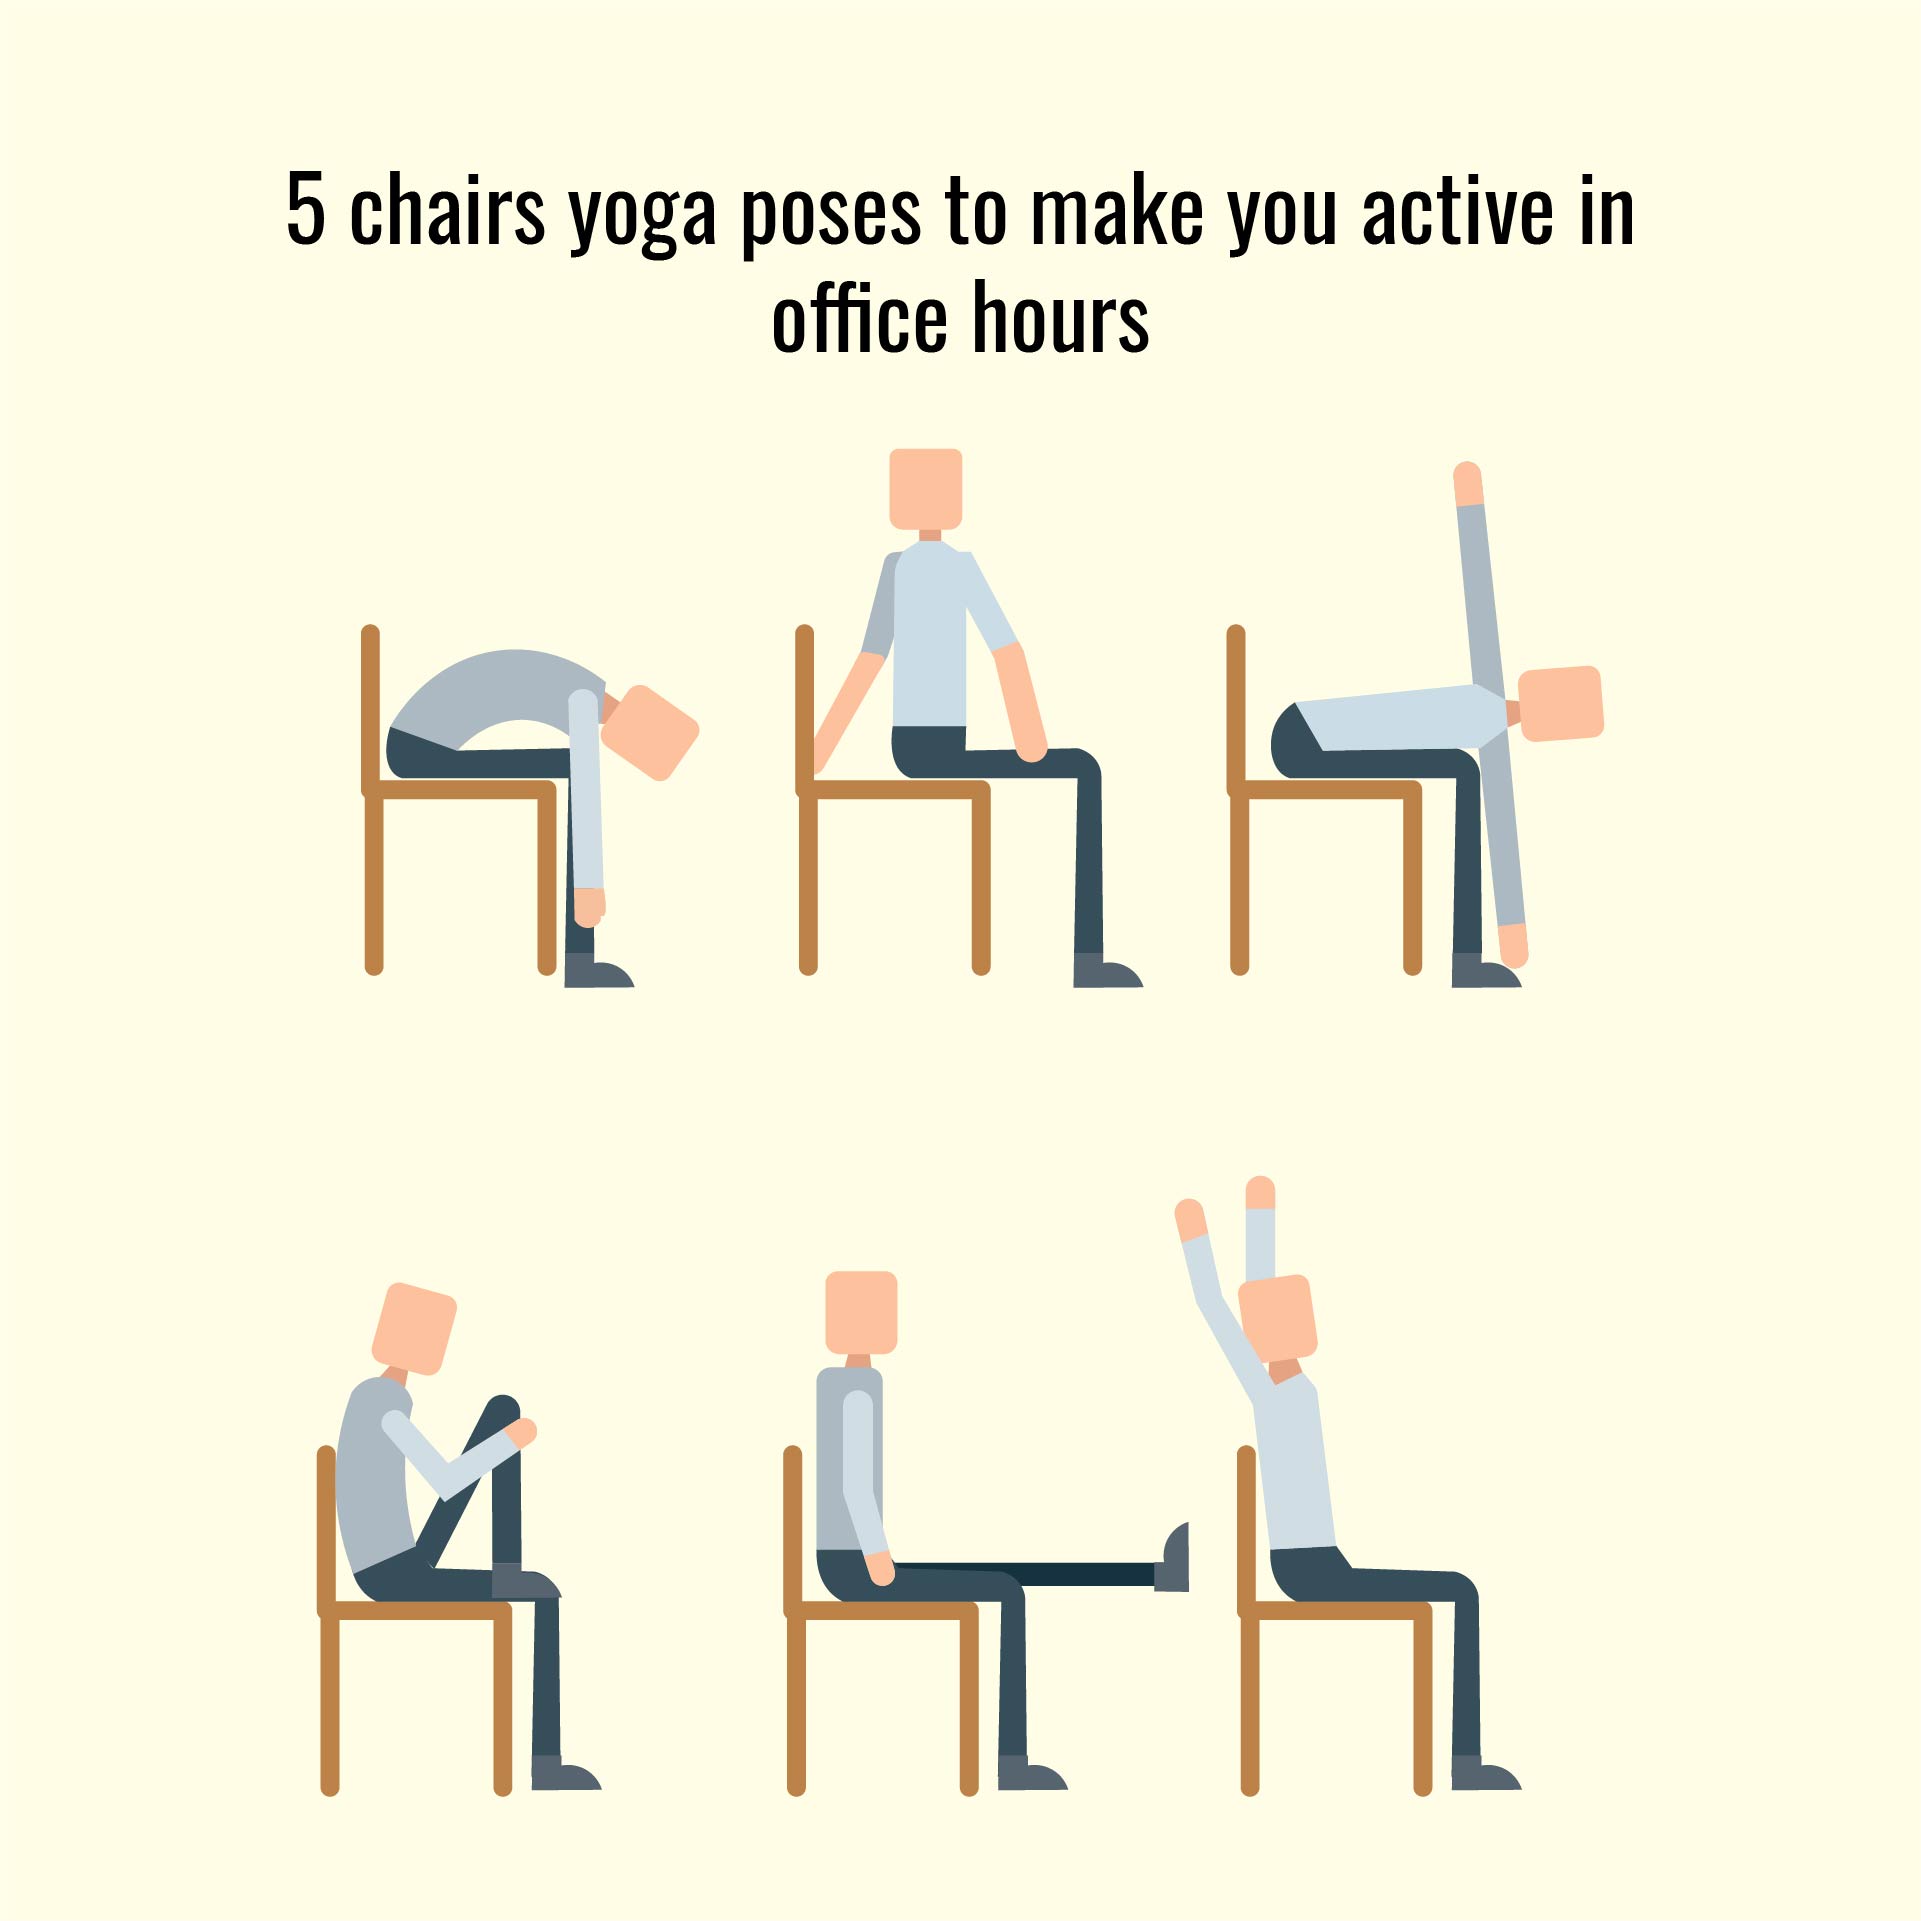 Chair Yoga For Seniors Printable - Customize and Print